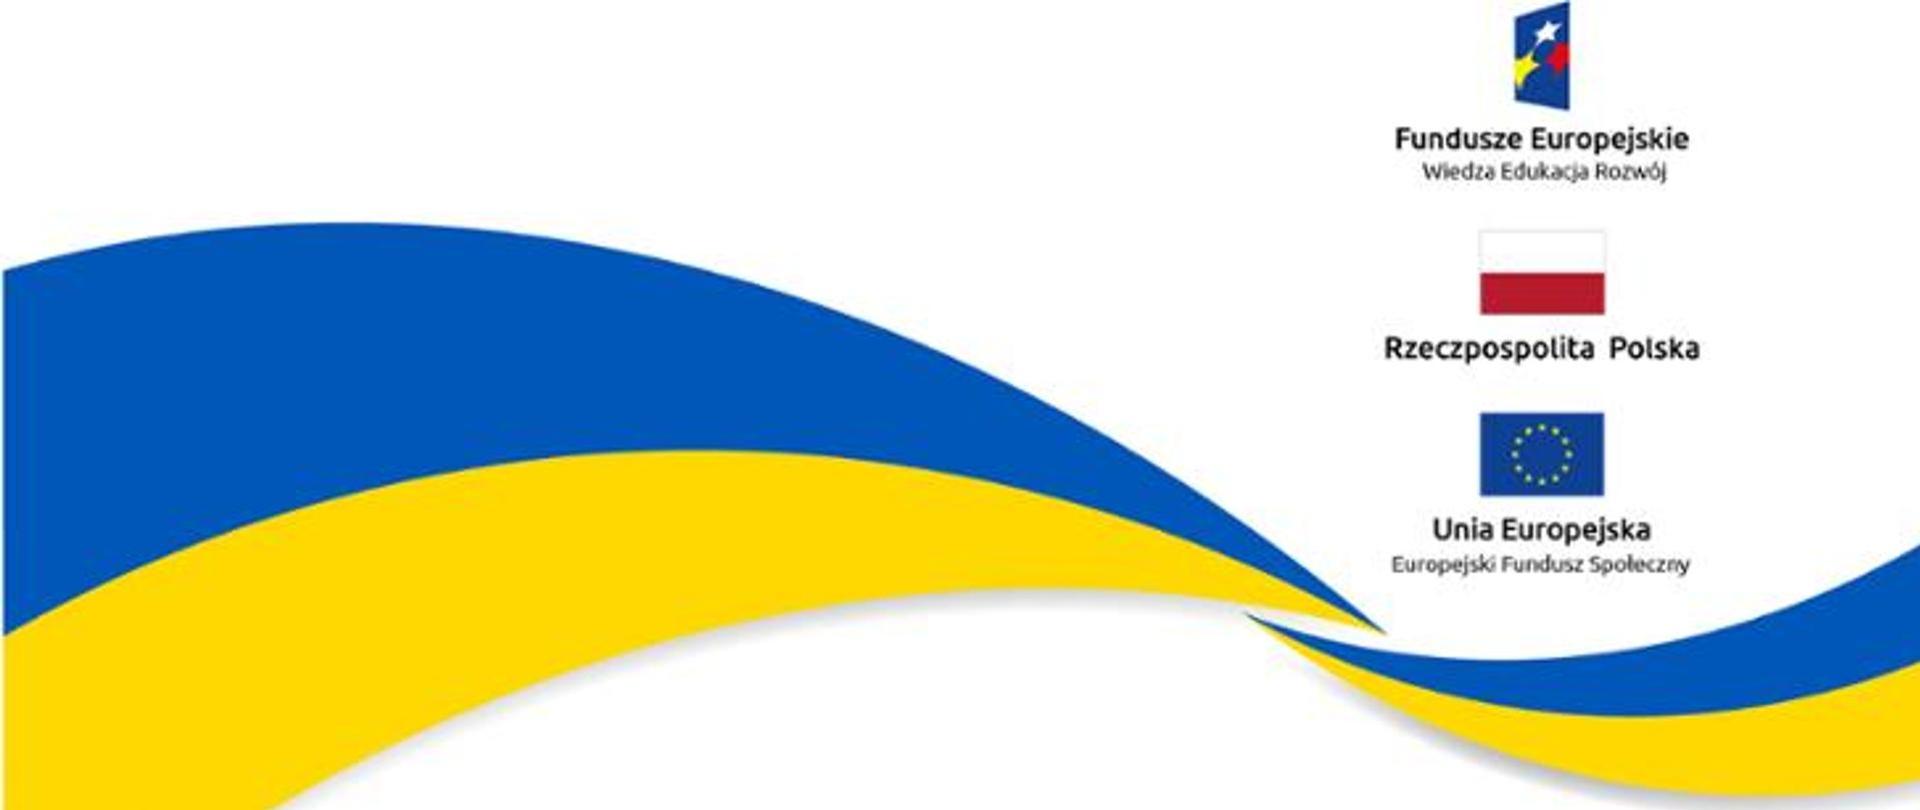 logotypy: Fundusze Europejskie – Wiedza Edukacja Rozwój, Rzeczpospolita Polska, Unia Europejska – Europejski Fundusz Społeczny" oraz flaga Ukrainy